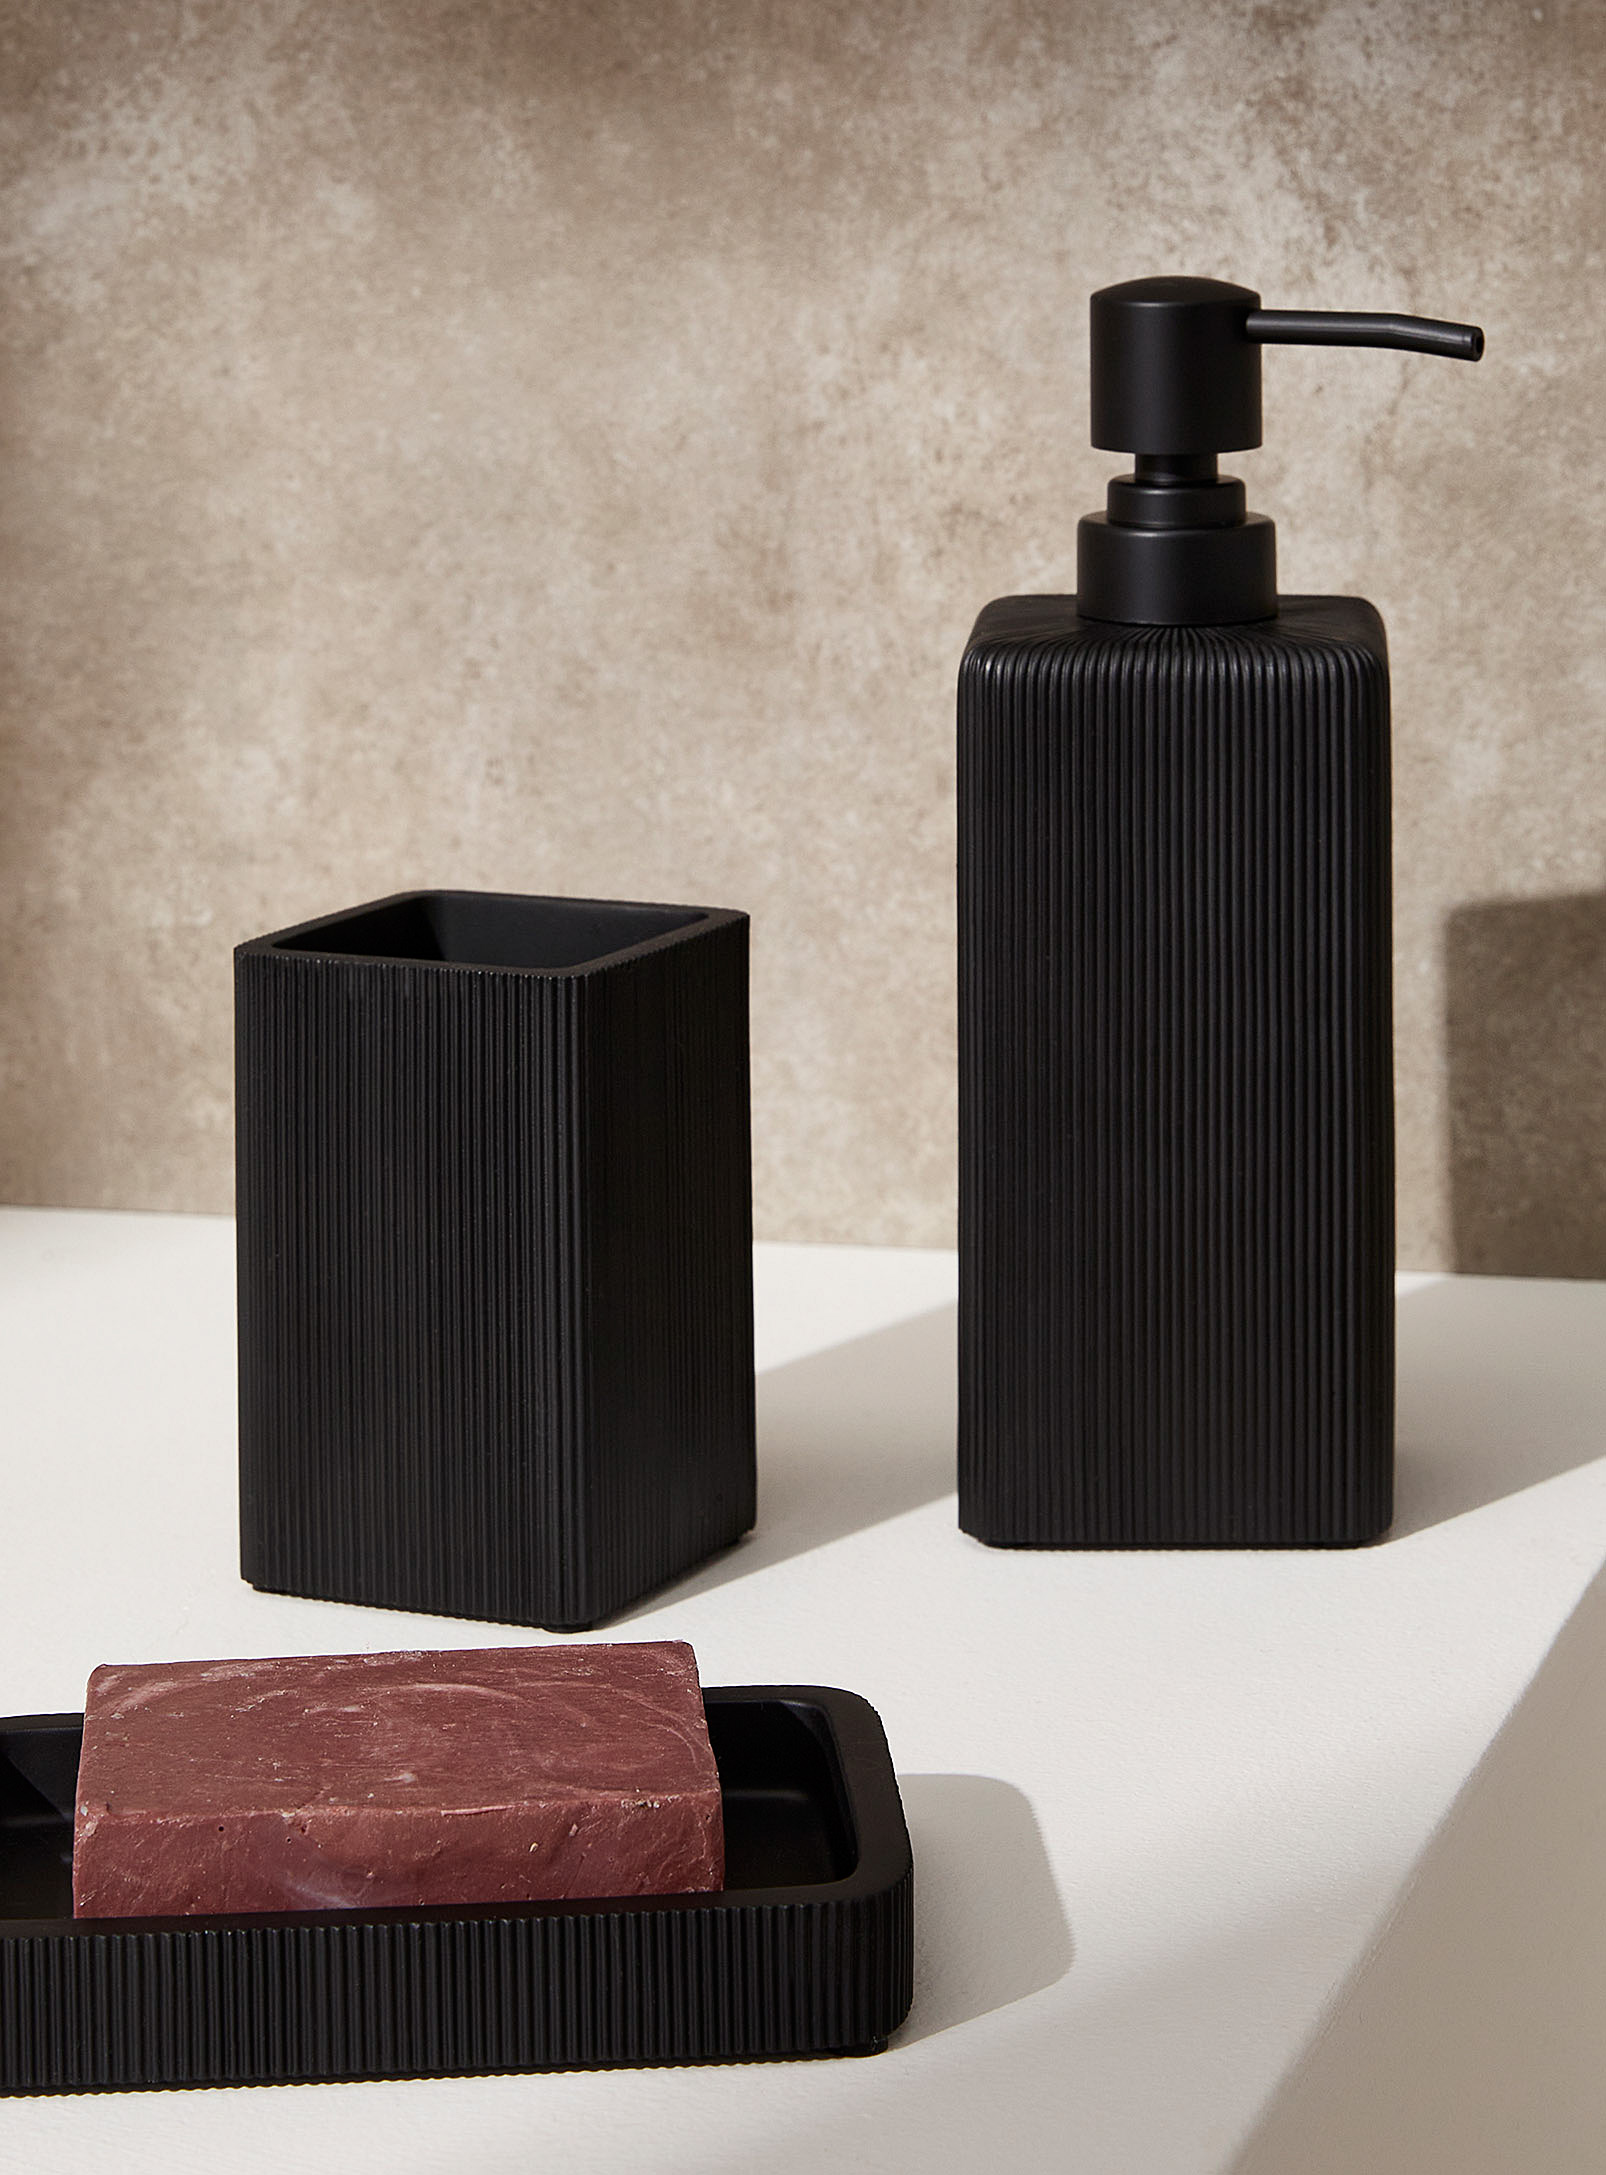 Simons Maison - Textured black resin soap